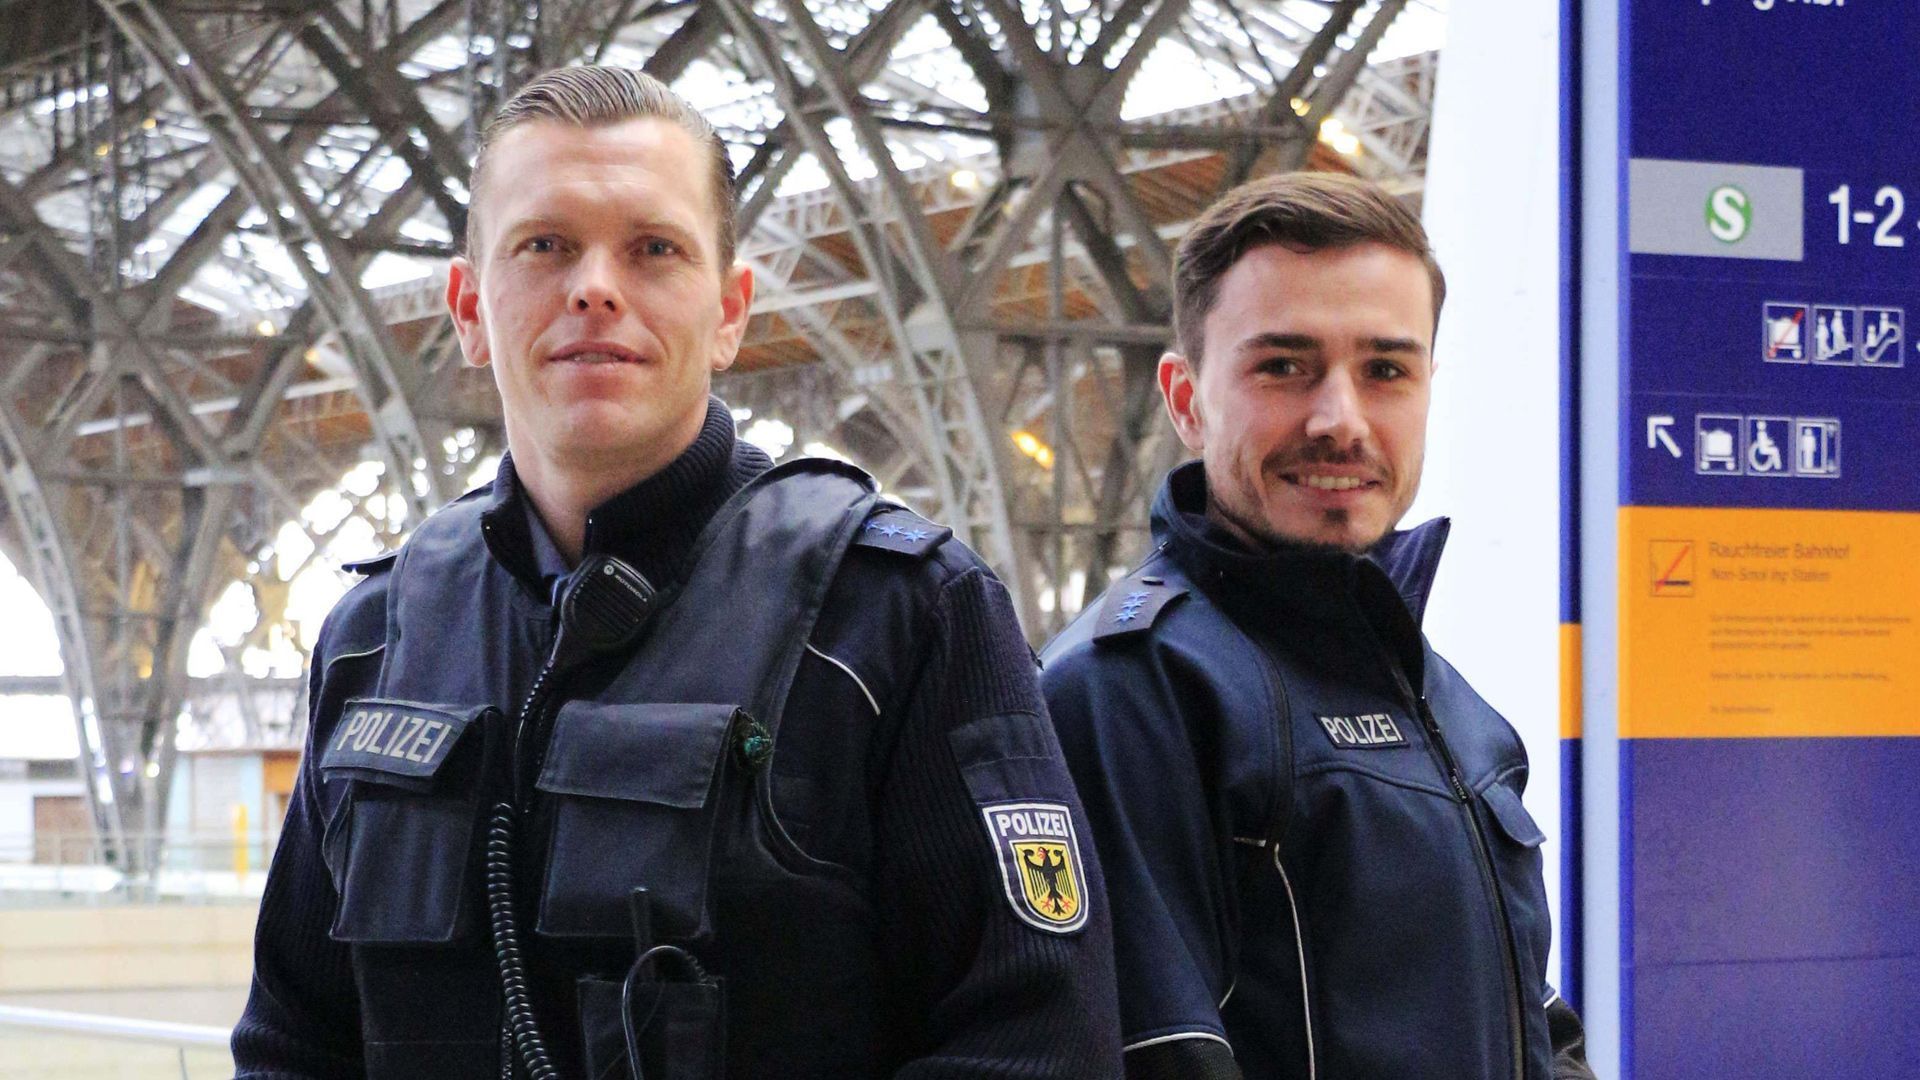 Thema u. a.: Nicht verkehrssicher - Polizei Braunschweig stoppt Fahrradfahrer